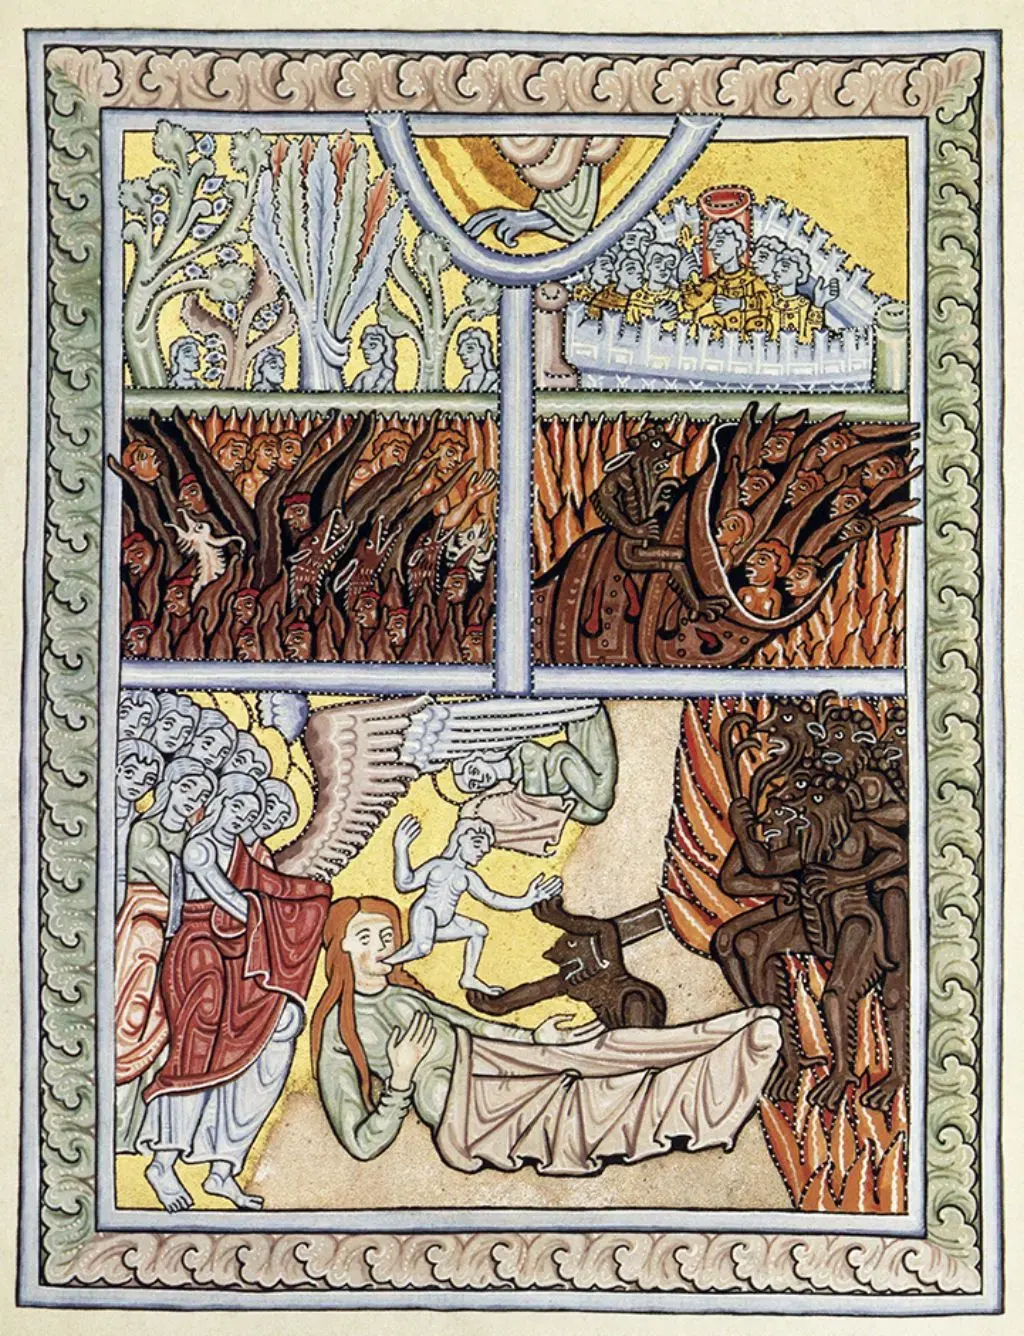 Illustration: Wir sehen, wie die Seele eines Gestorbenen von Engeln und Teufeln umkämpft wird; Bilder von Hölle und Paradies folgen in der oberen Hälfte des Bildes